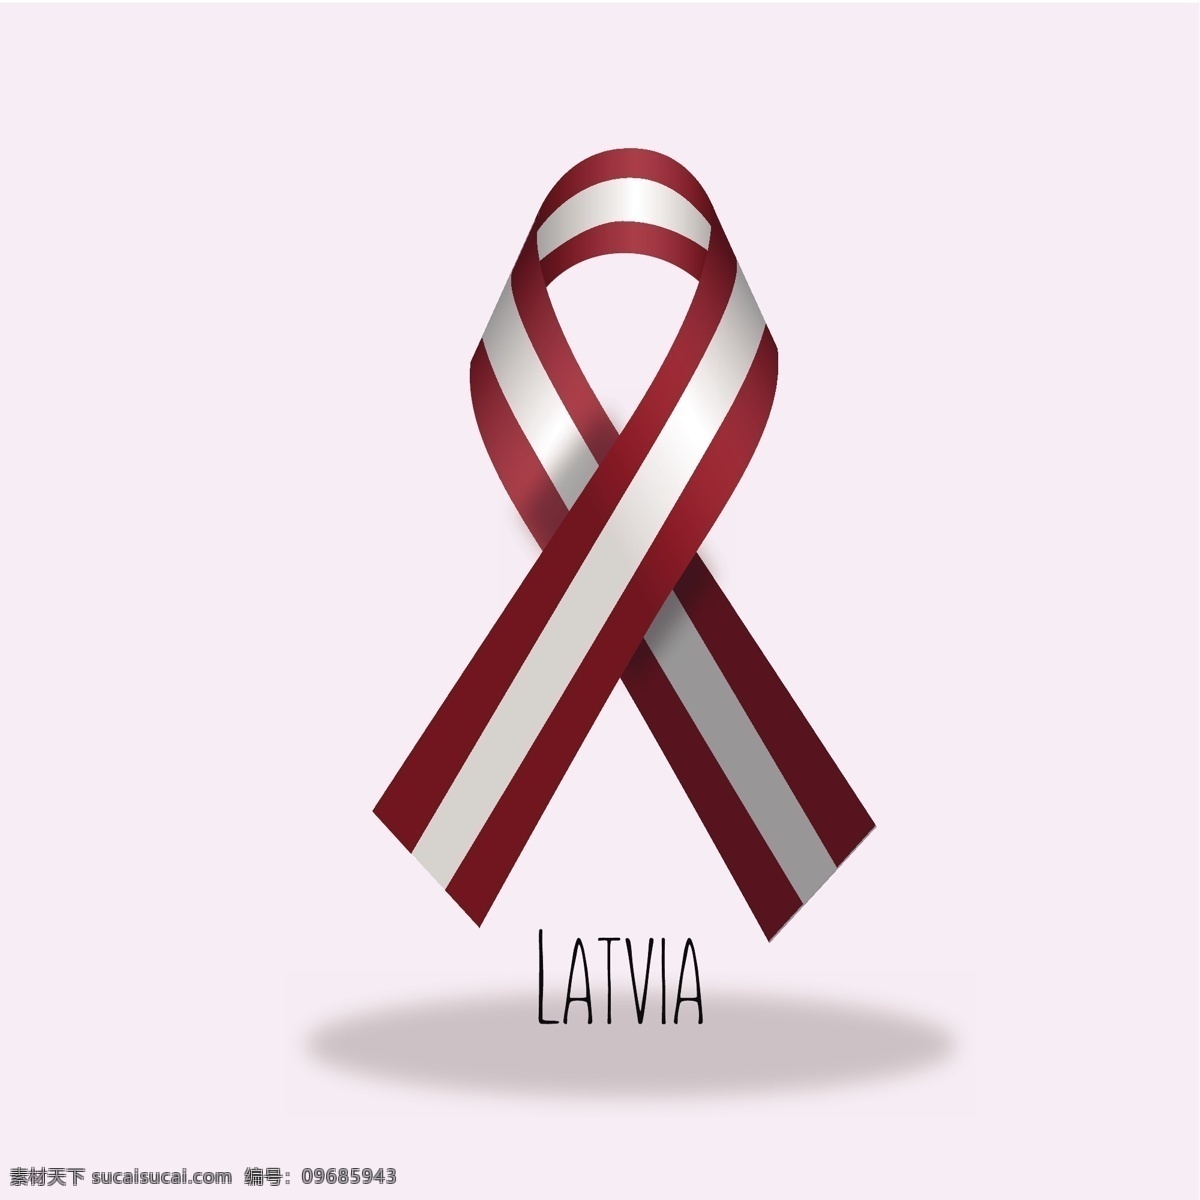 拉脱维亚 旗 带 旗帜 丝带 图案 横幅 标志 装饰 彩带横幅 色彩 身份 国家 政府 国旗 爱国 民族 代表